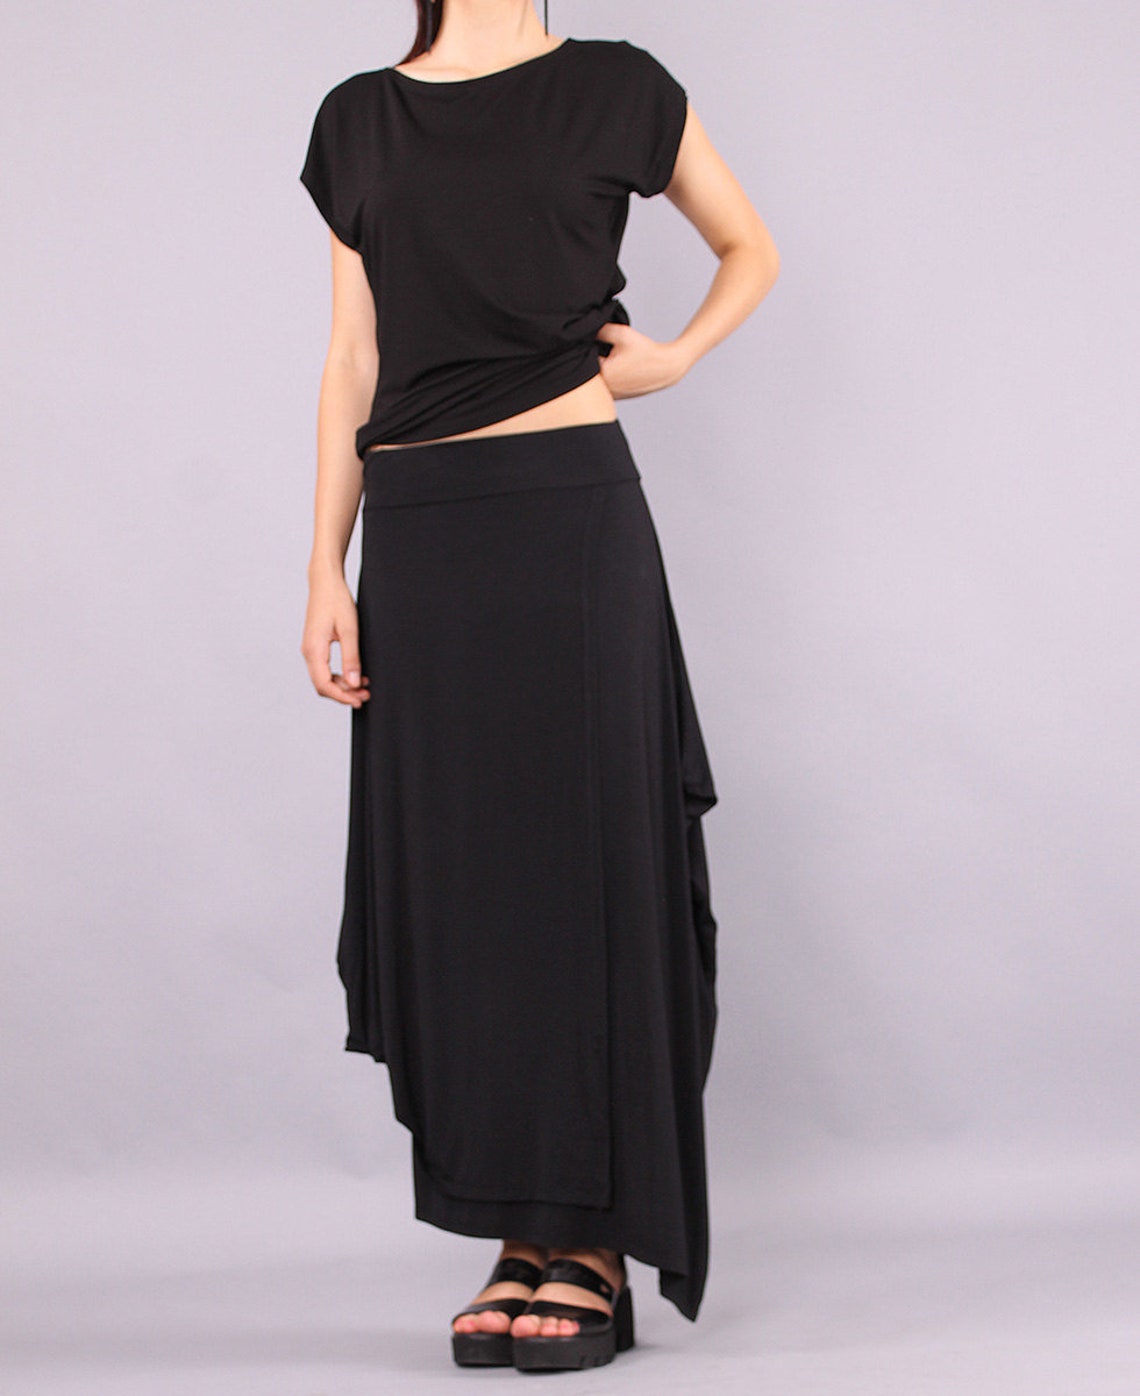 Maxi Skirt Long Skirt Black Skirt Floor Length Skirt - Etsy